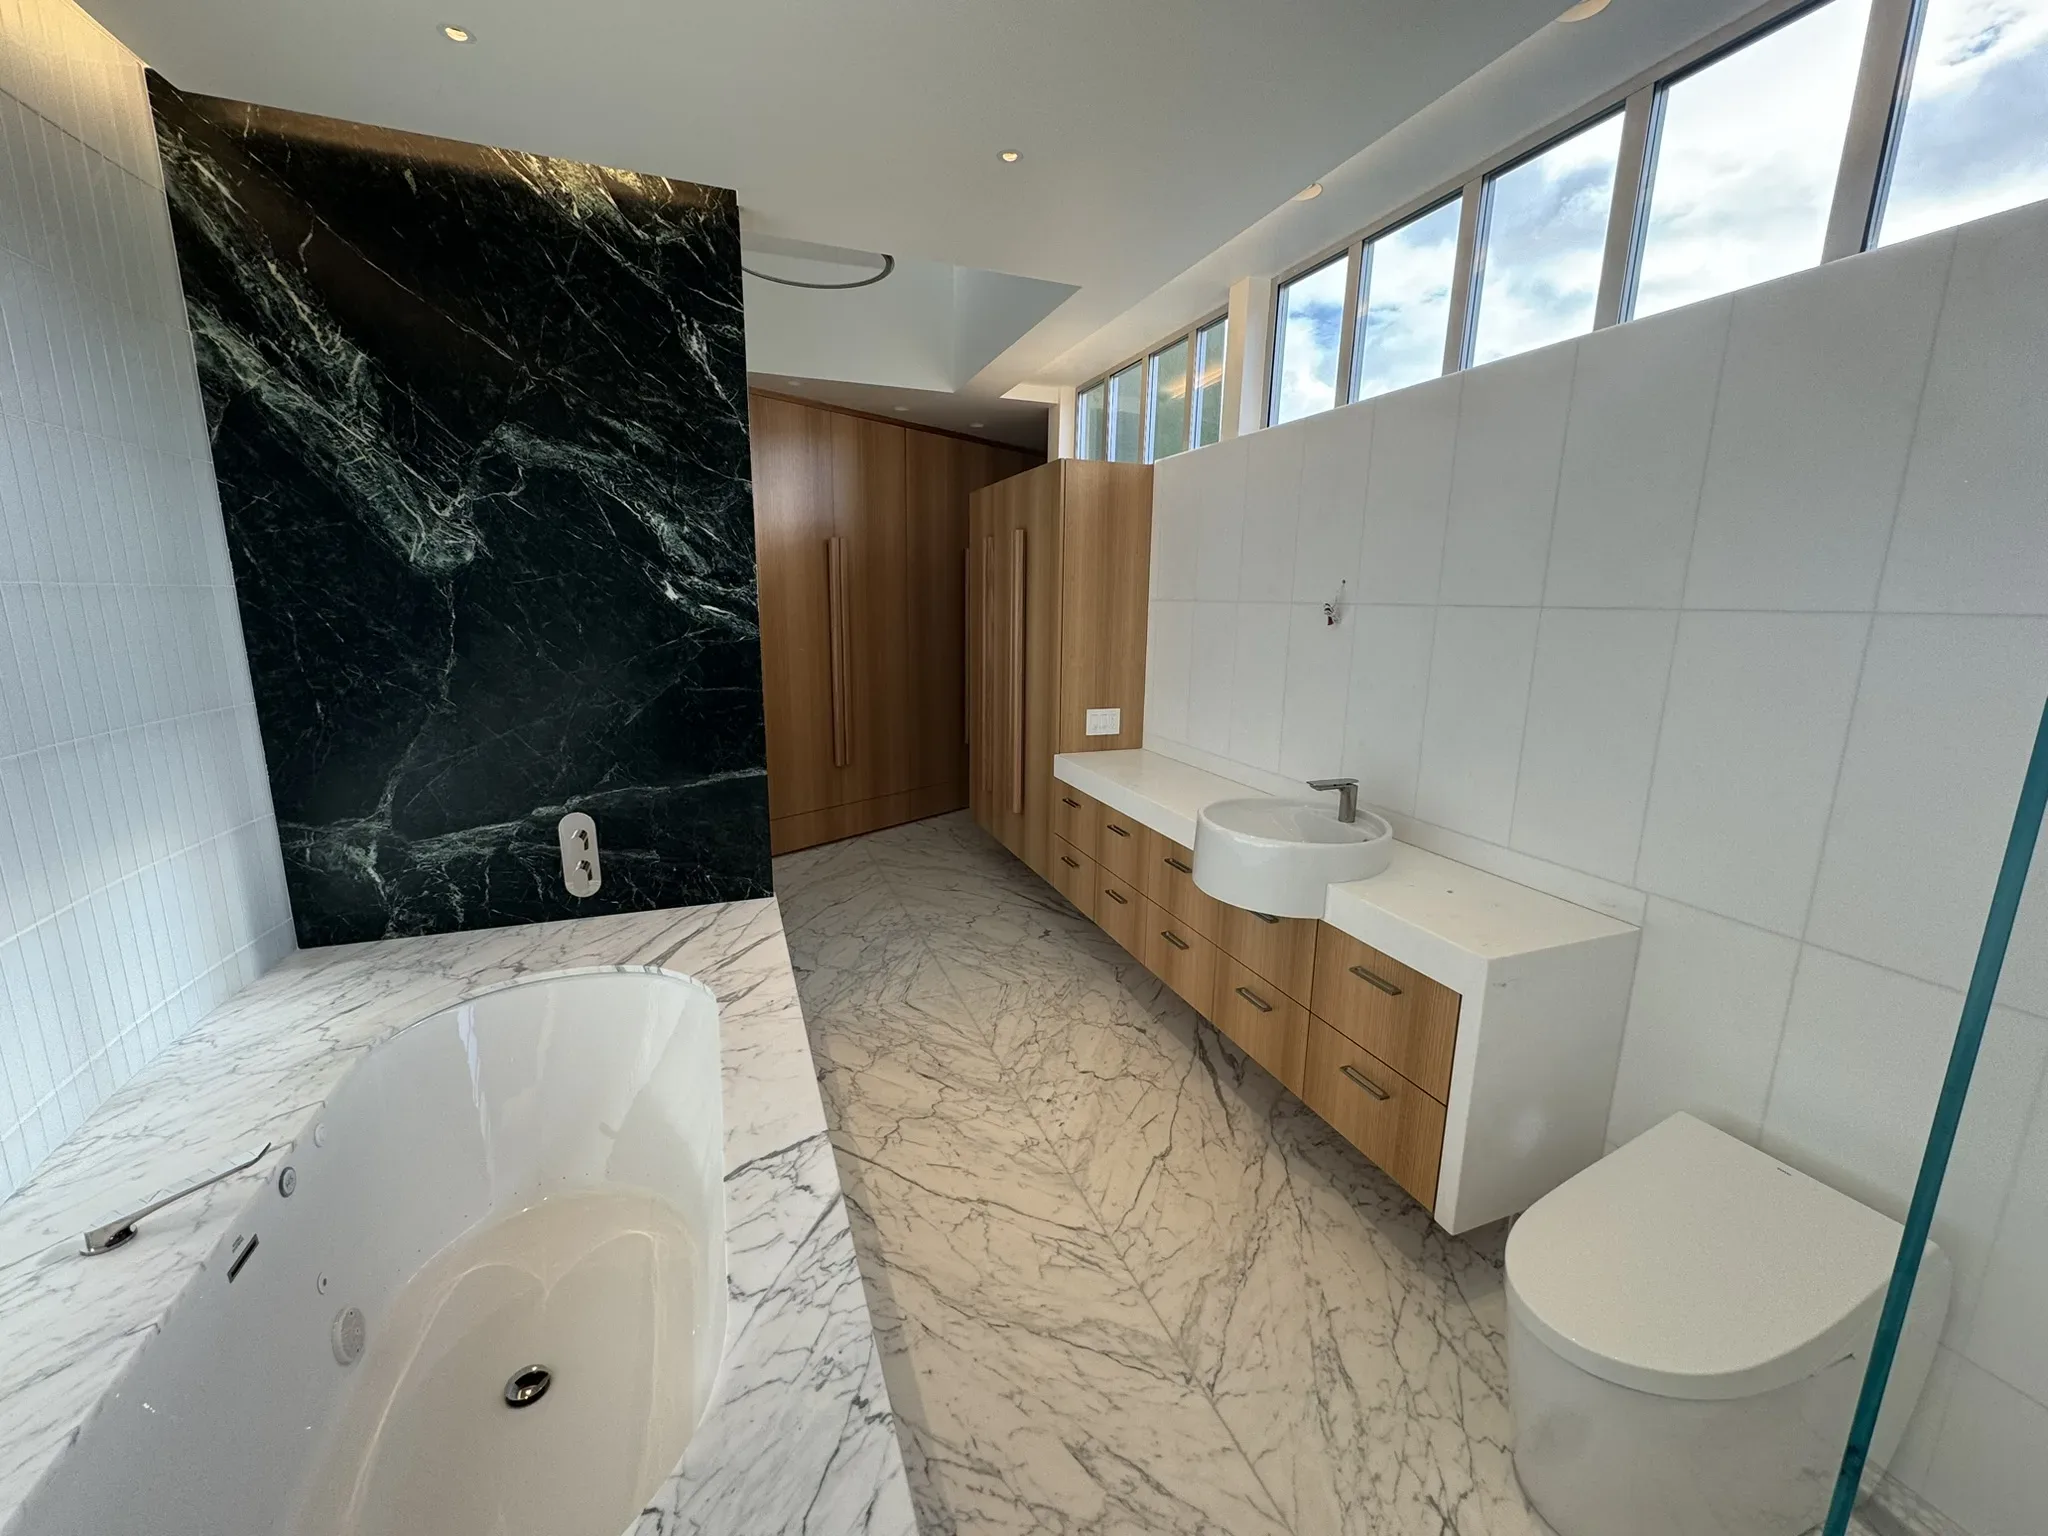 A modern bathroom with marble walls and a bathtub.